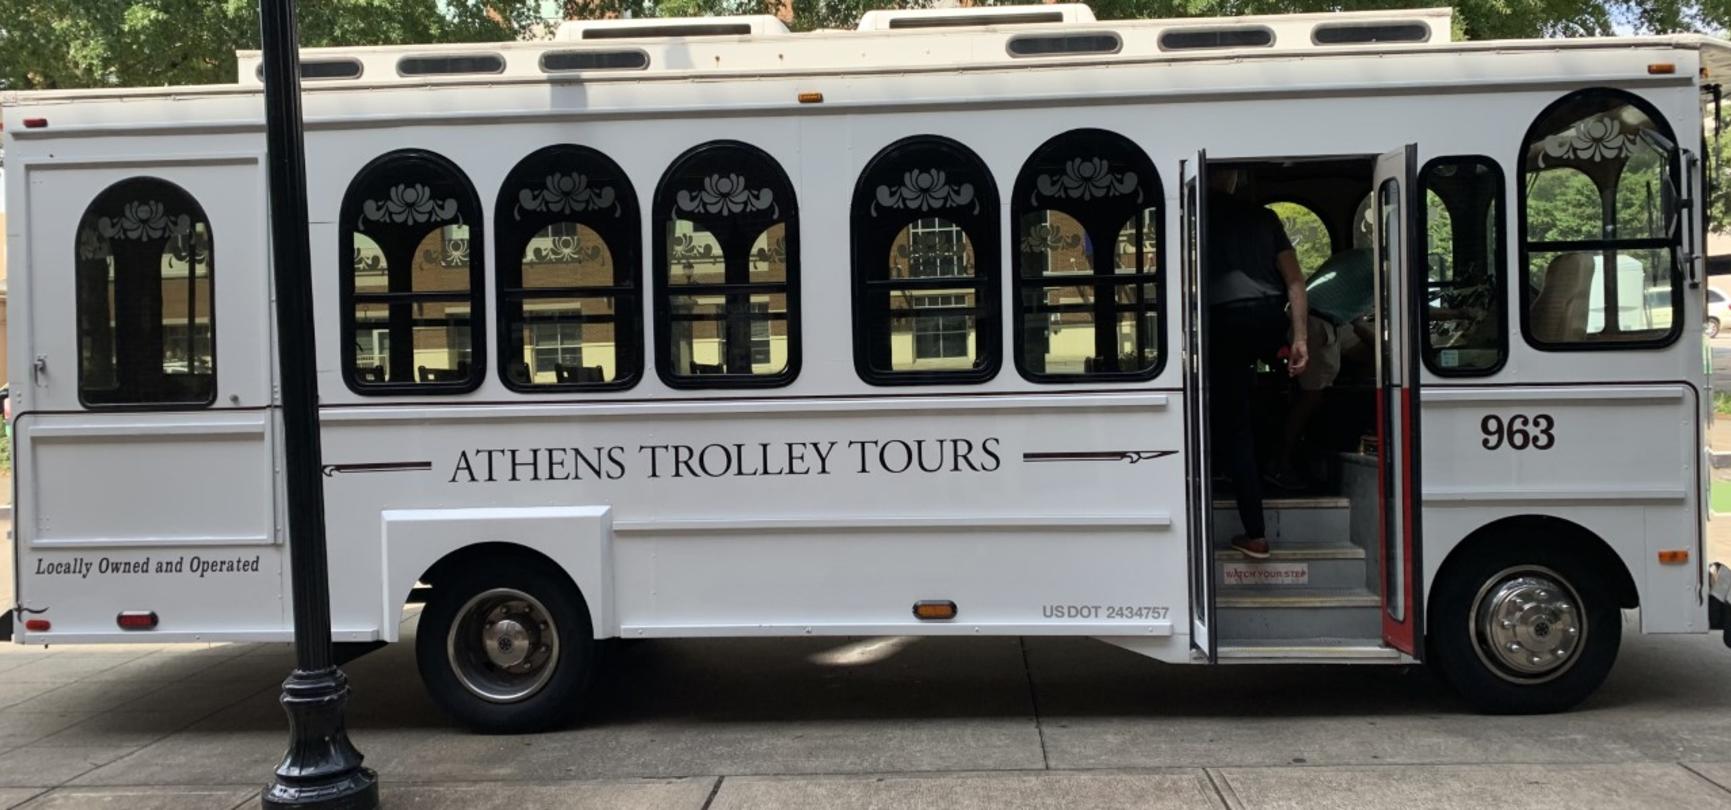 werkloosheid Gematigd Meer dan wat dan ook The Athens Convention & Visitors Bureau Announces New Beer Trail Trolley  Tour